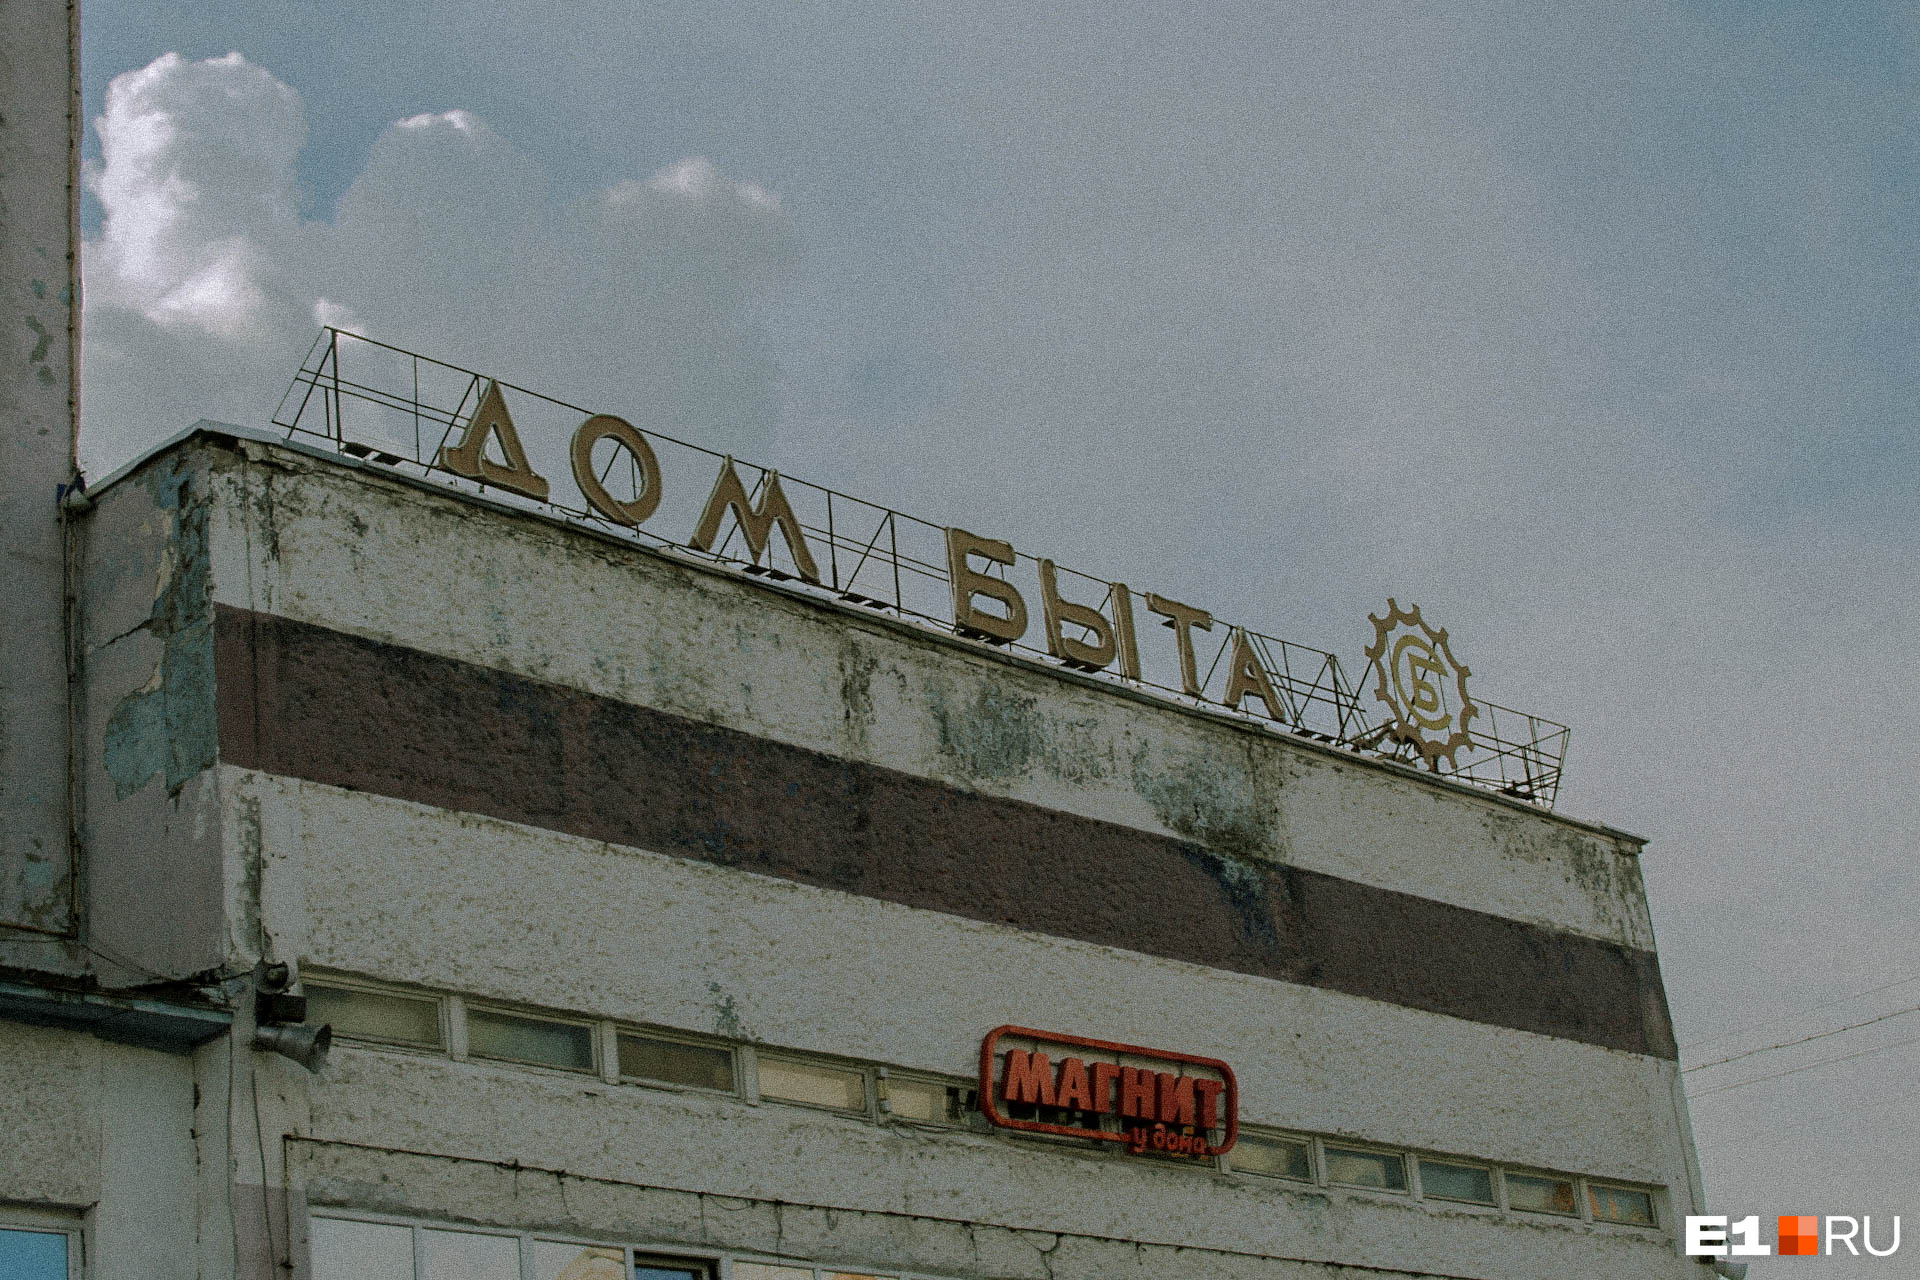 Дом быта на Ленина, 49. Внутри современные магазины